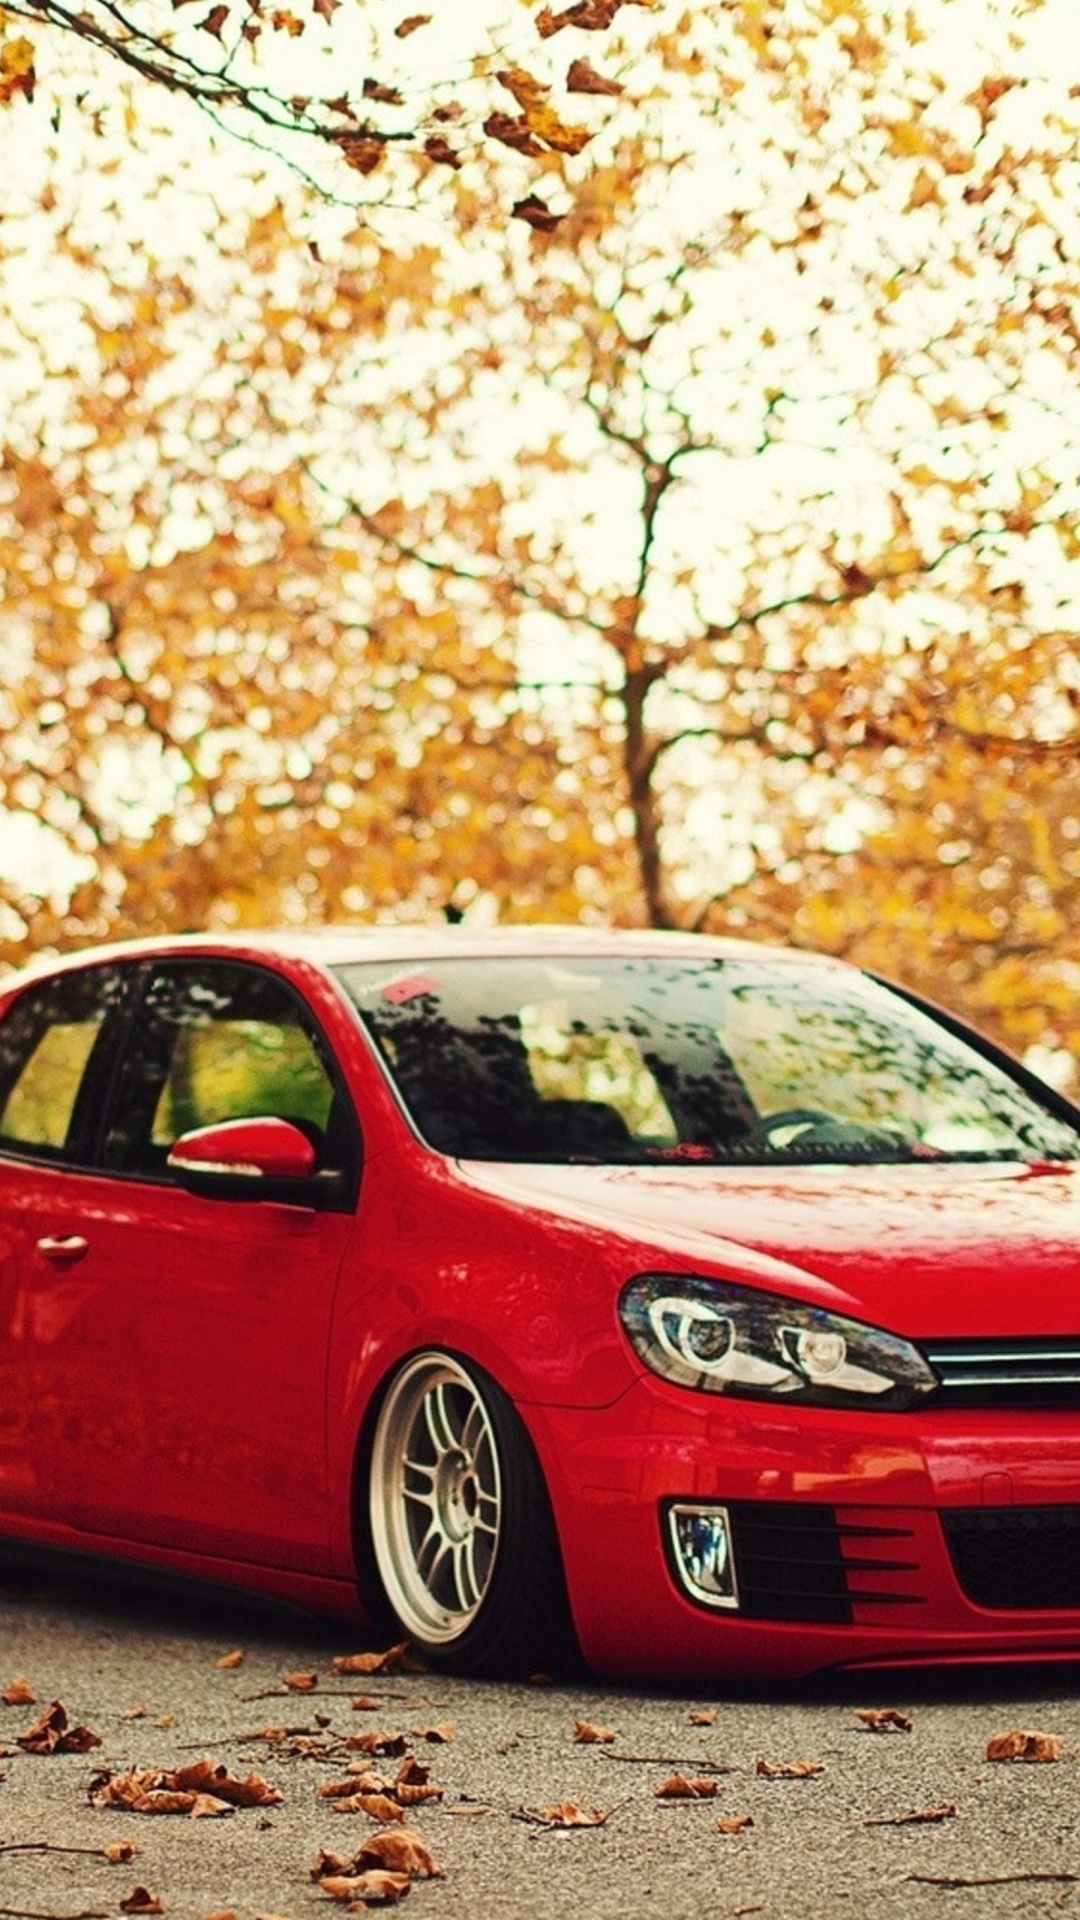 Volkswagen Rojo Hatchback de 5 Puertas en la Carretera Durante el Día. Wallpaper in 1080x1920 Resolution